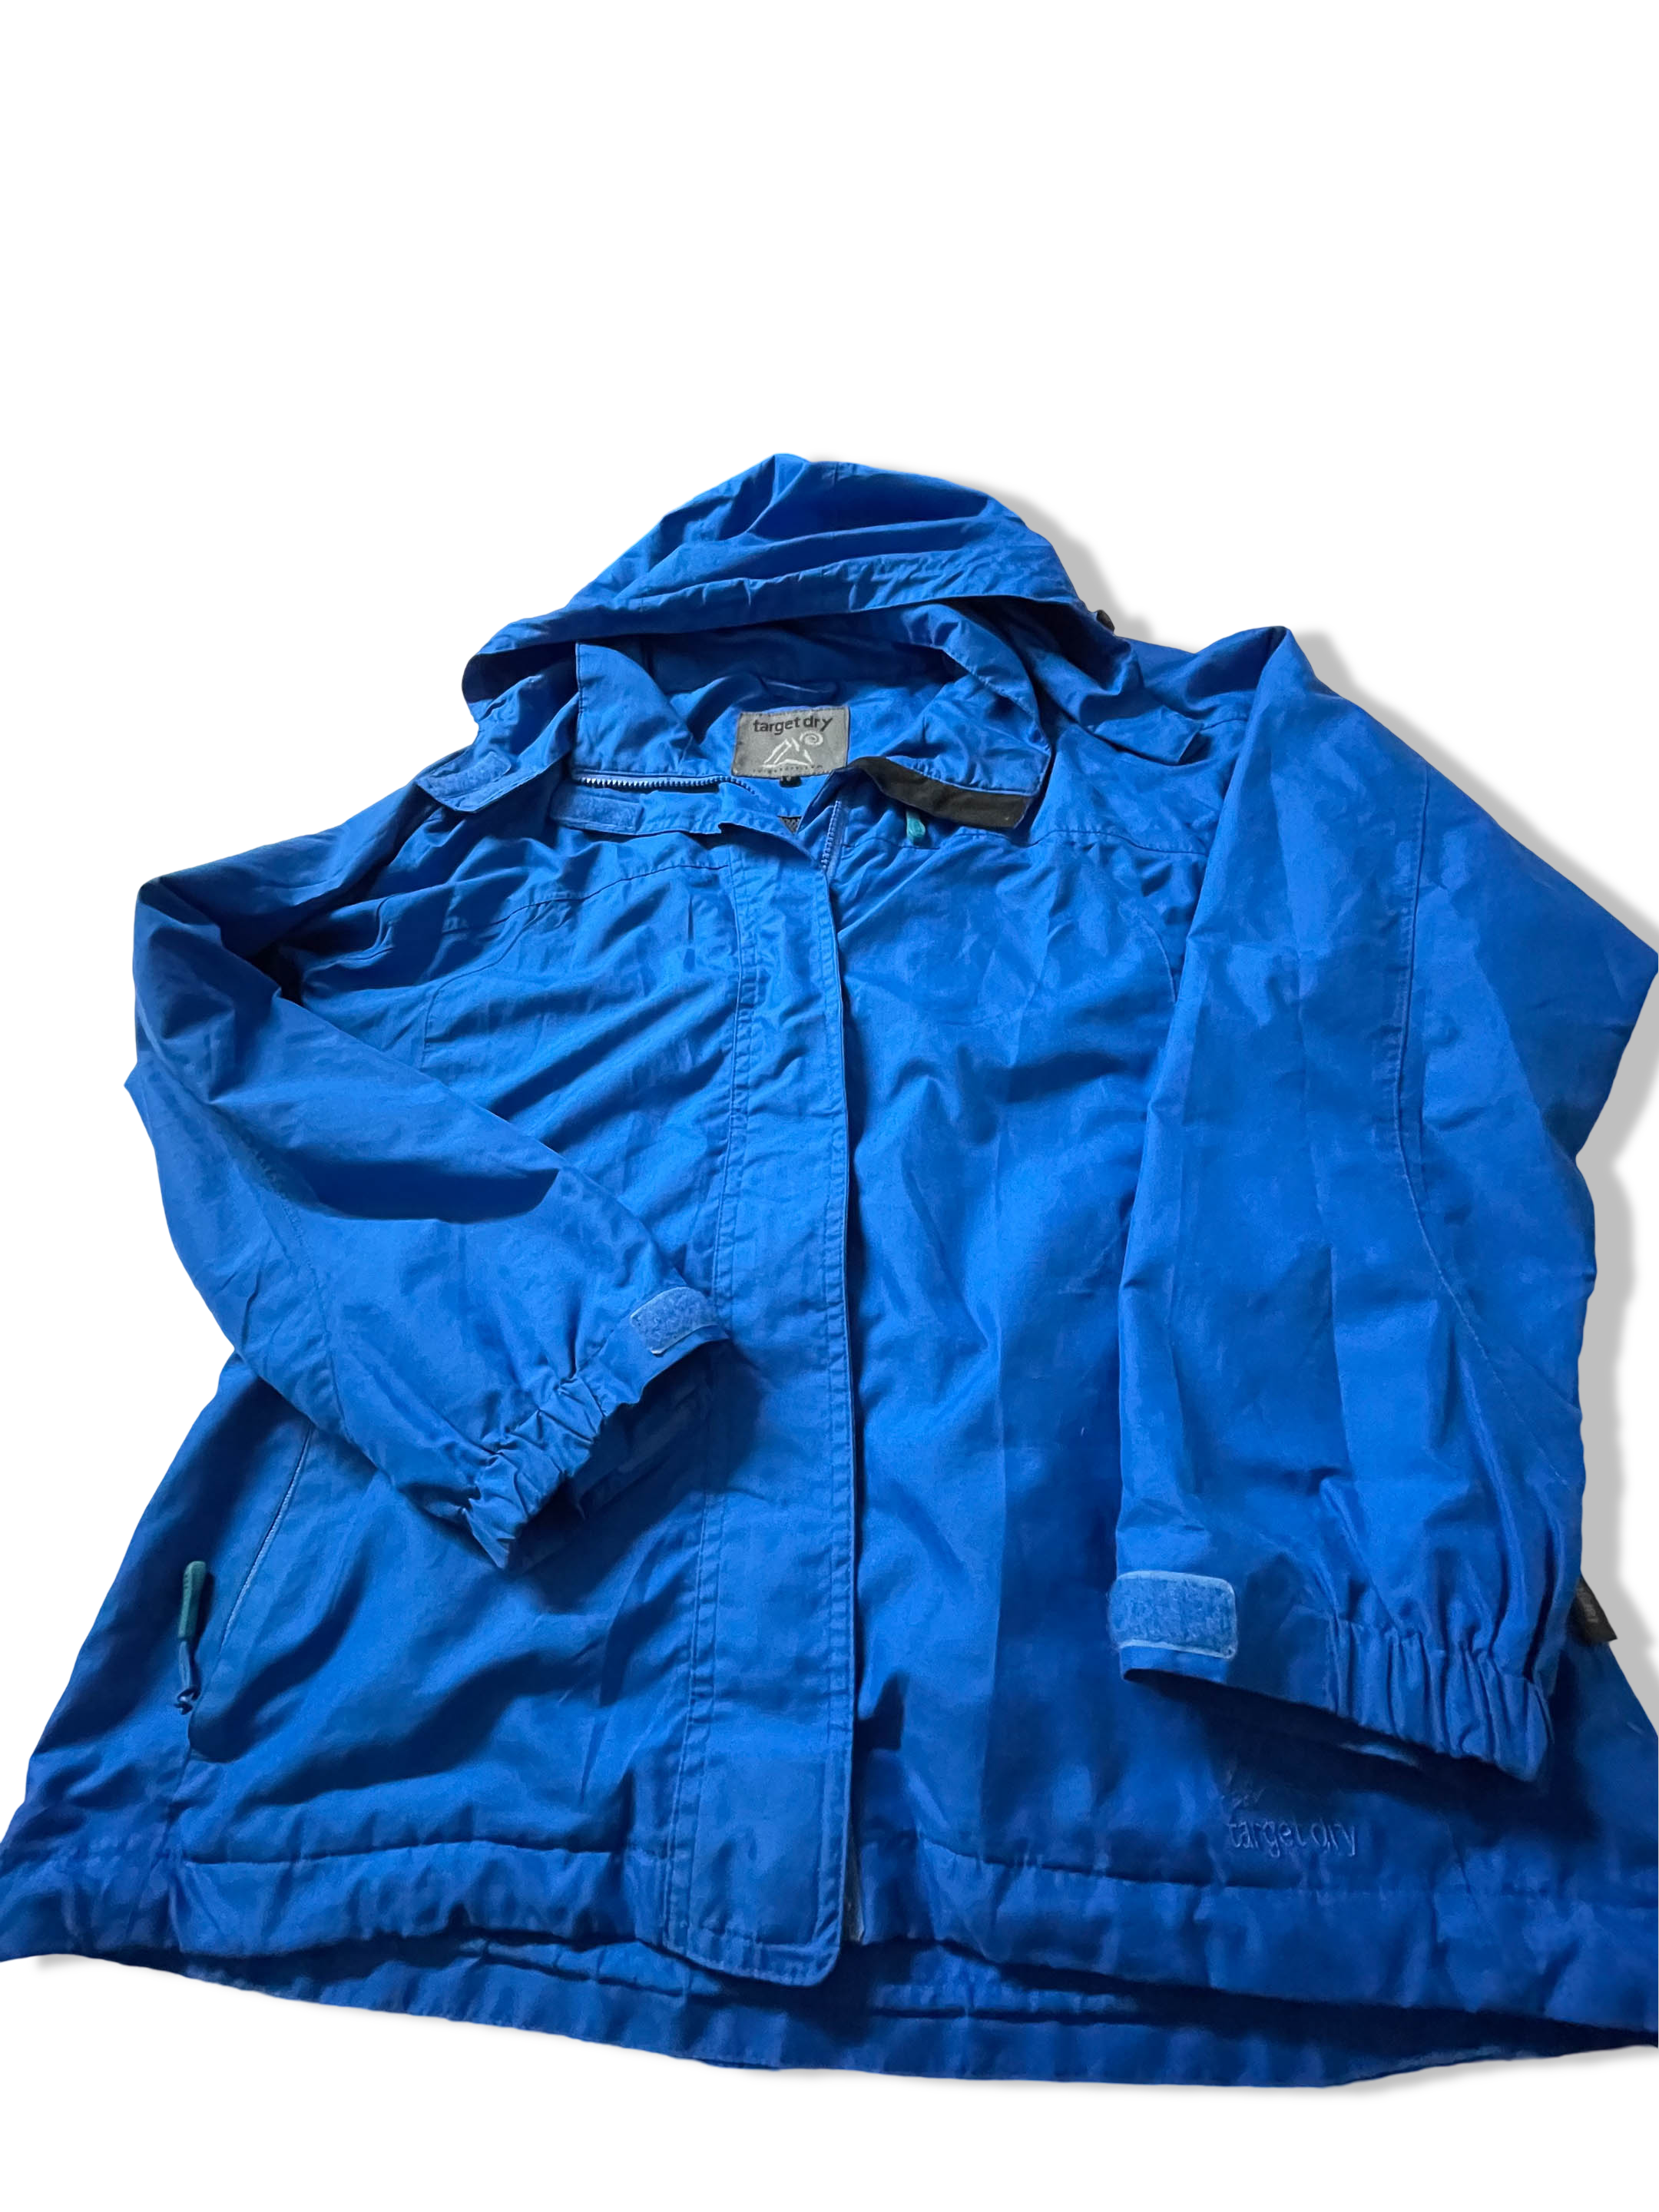 Vintage women's Target Dry blue polyester waterproof rain coat size 12|L 29 W 20